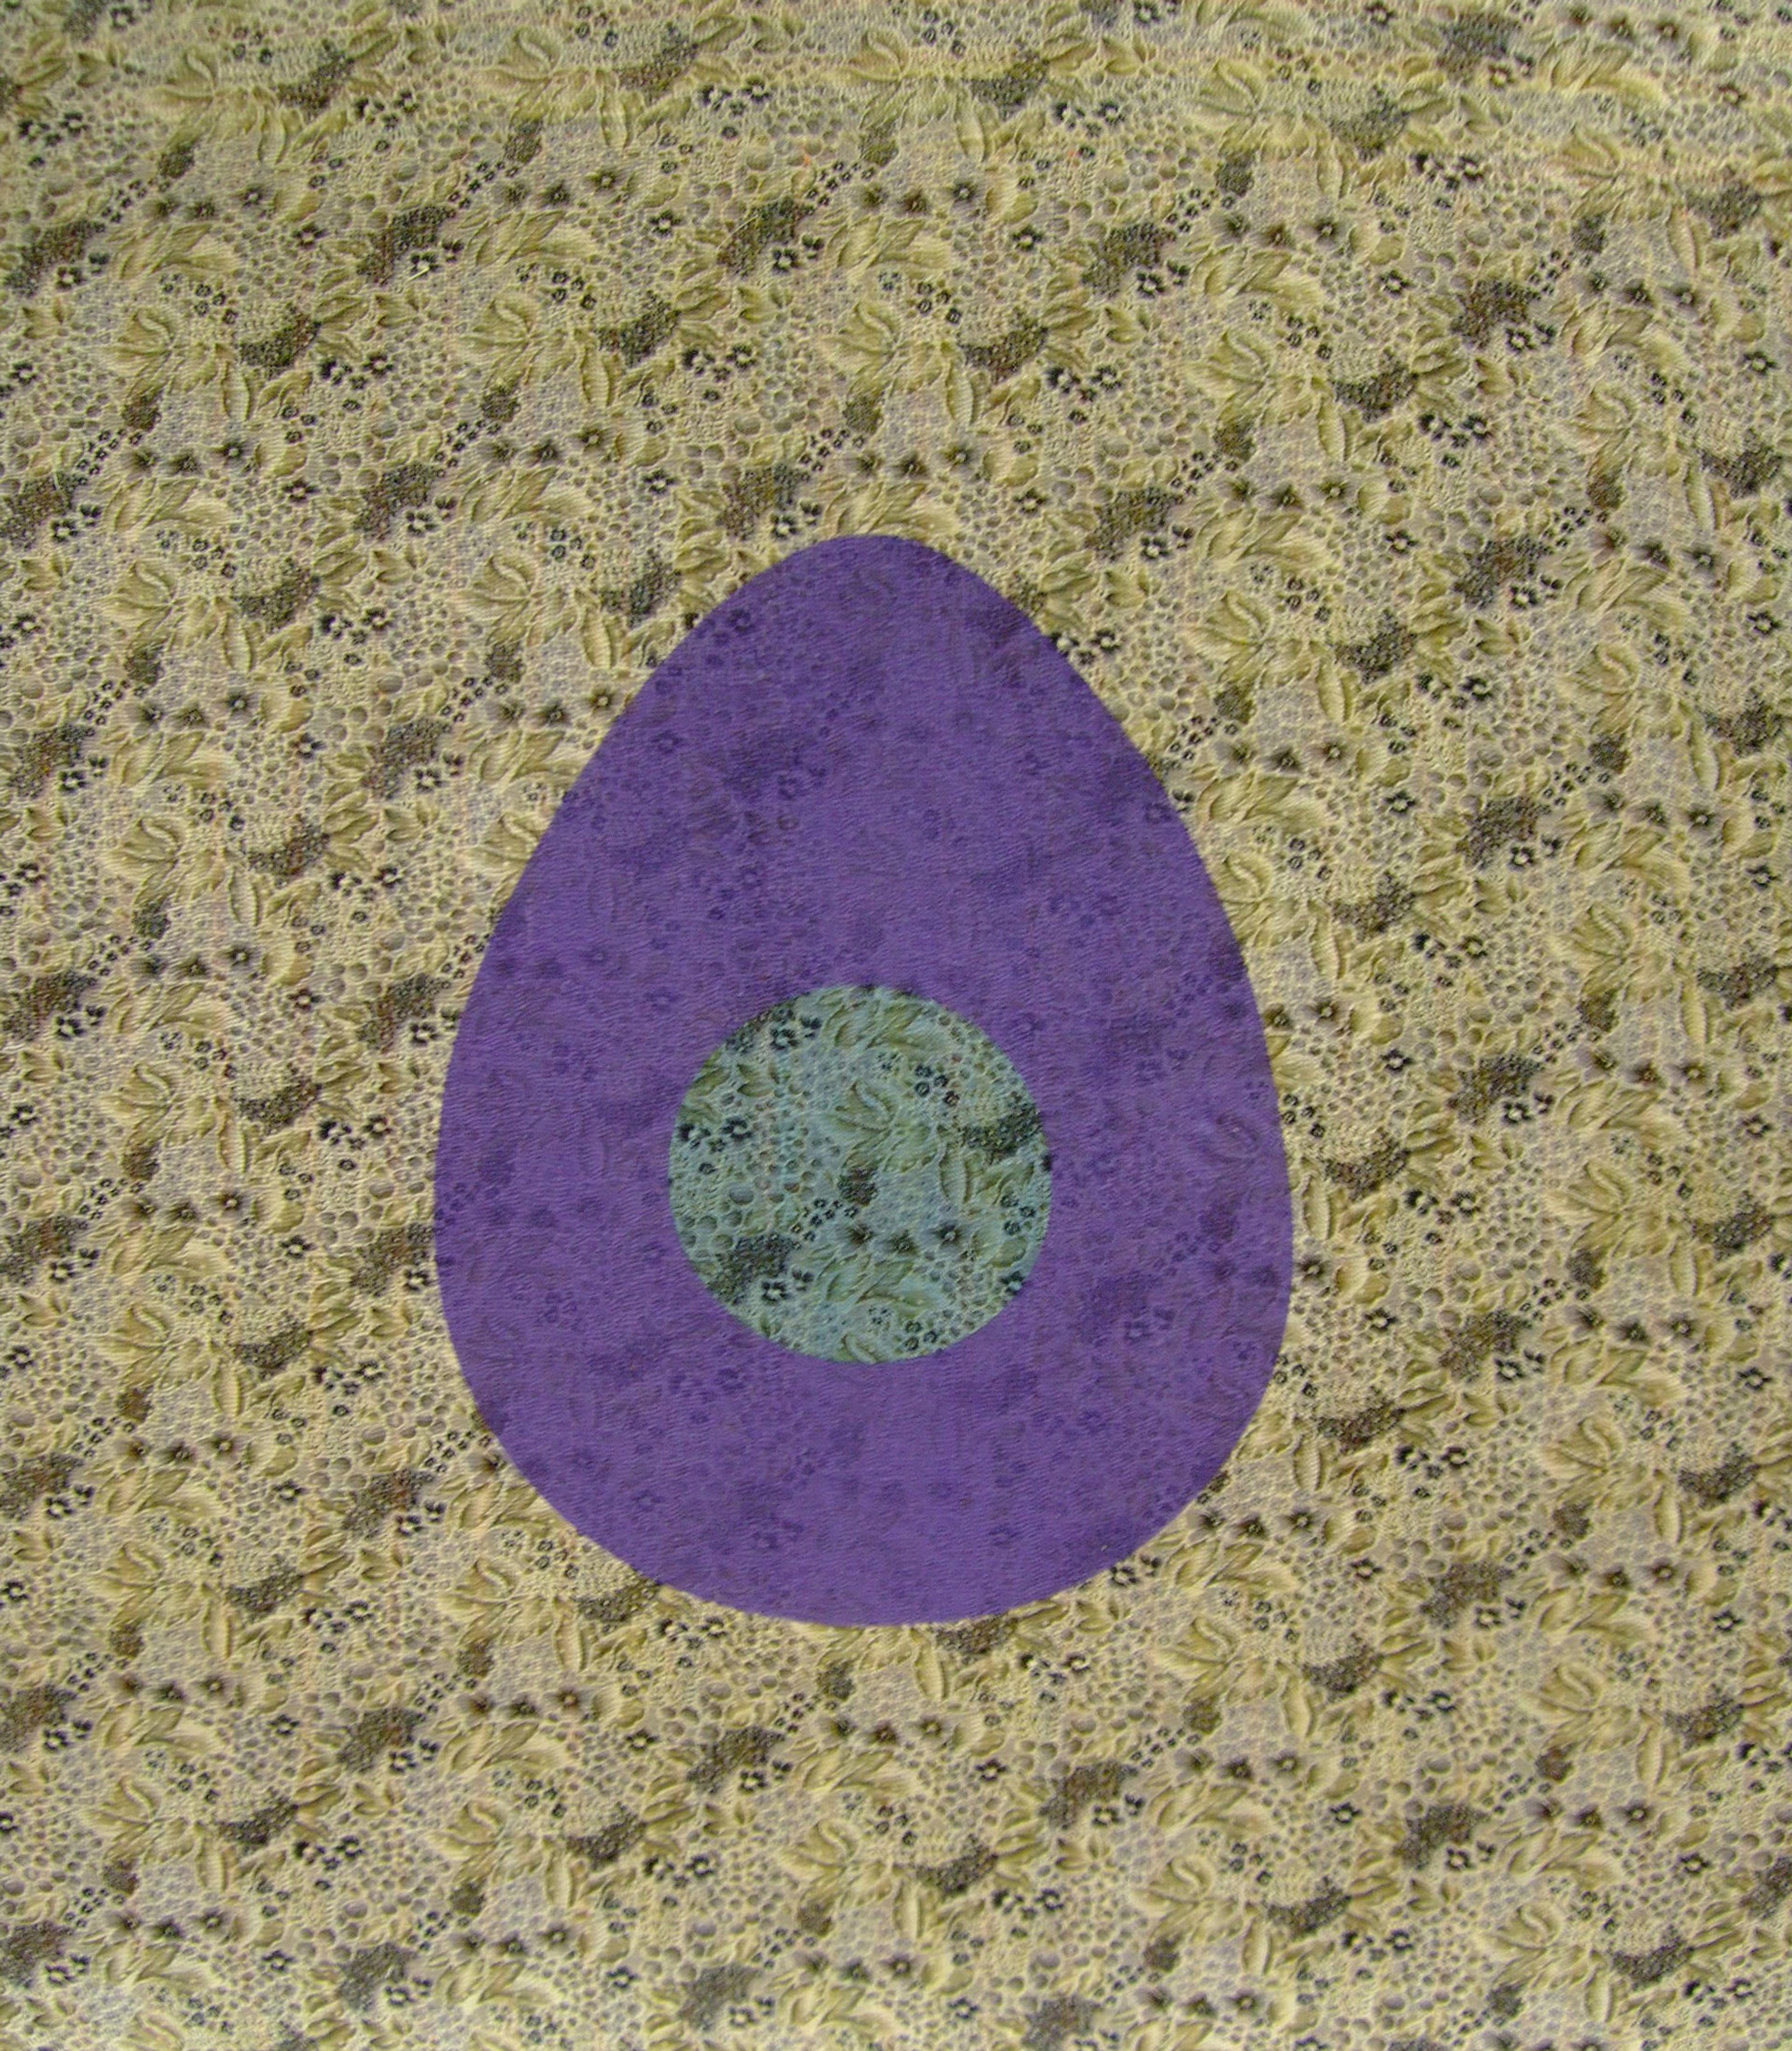 Cosmic Egg I